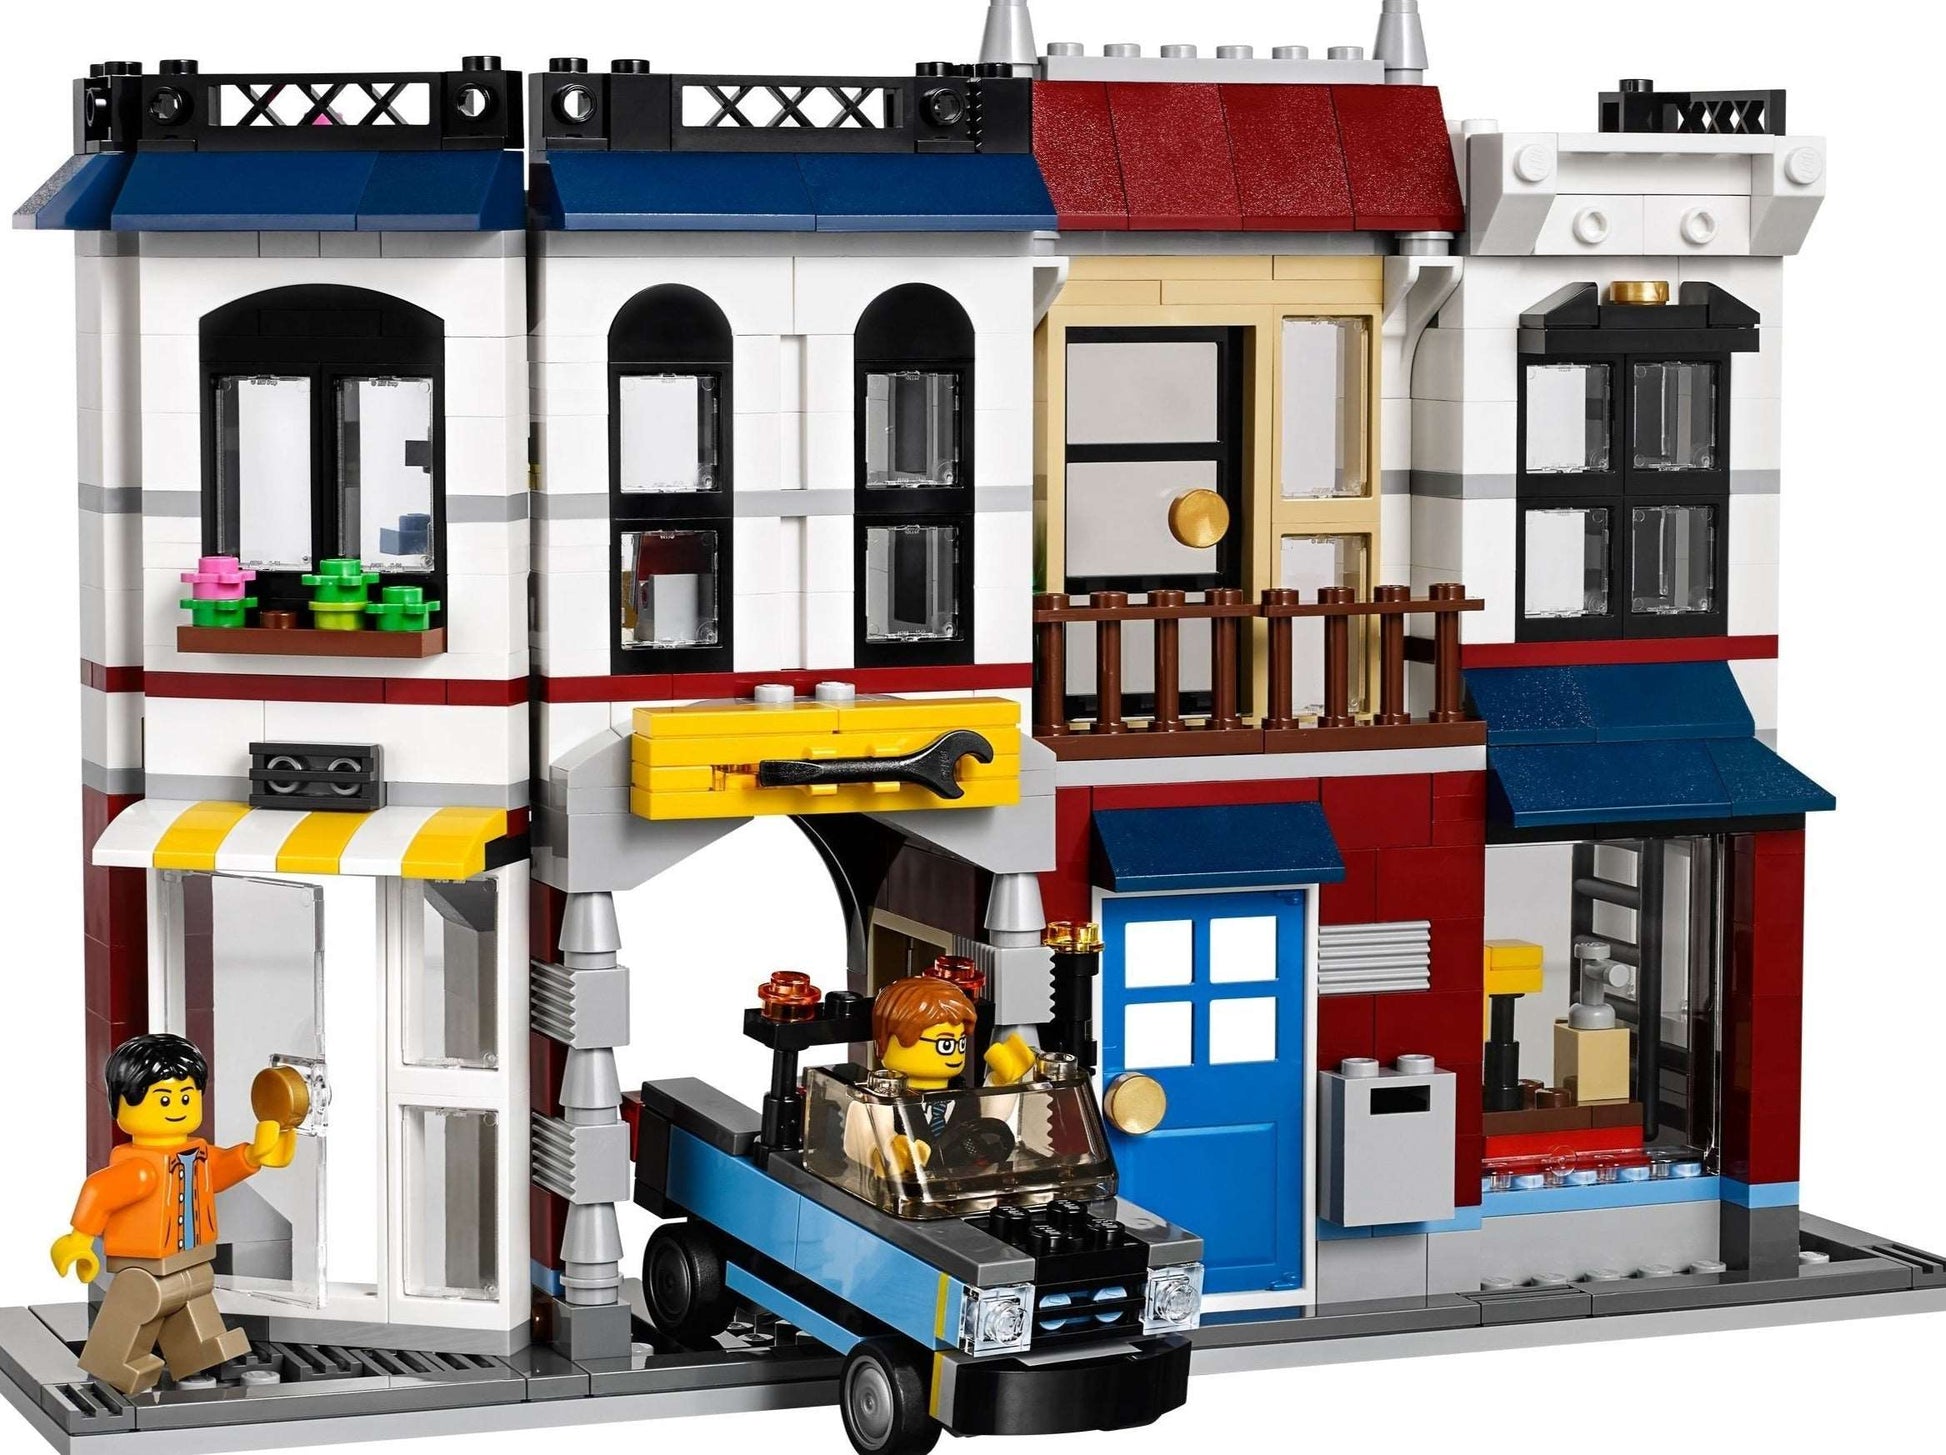 Geslaagd Onbemand eer Lego for kids Fietswinkel & Café - 31026 : Huur Lego Brickset for You